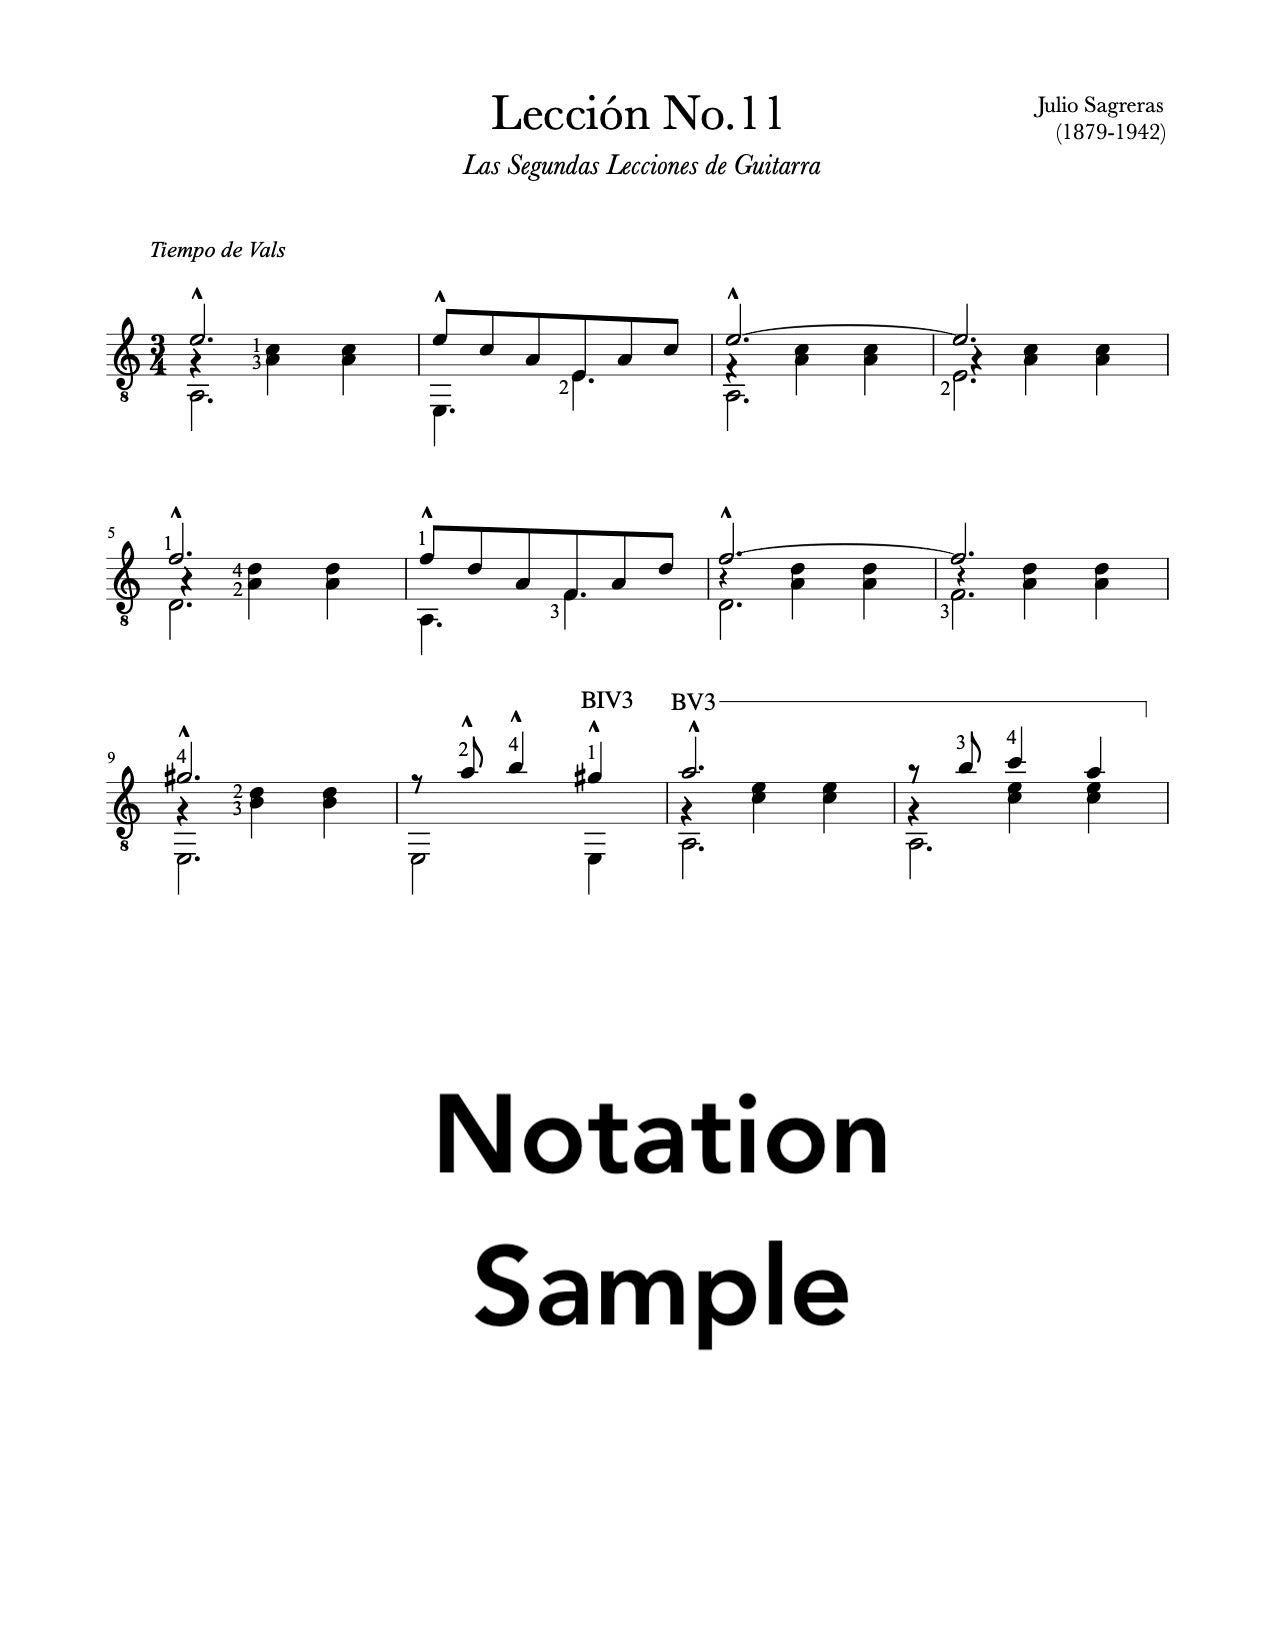 Lección No.11, Book 2 by Sagreras (Notation Sample)